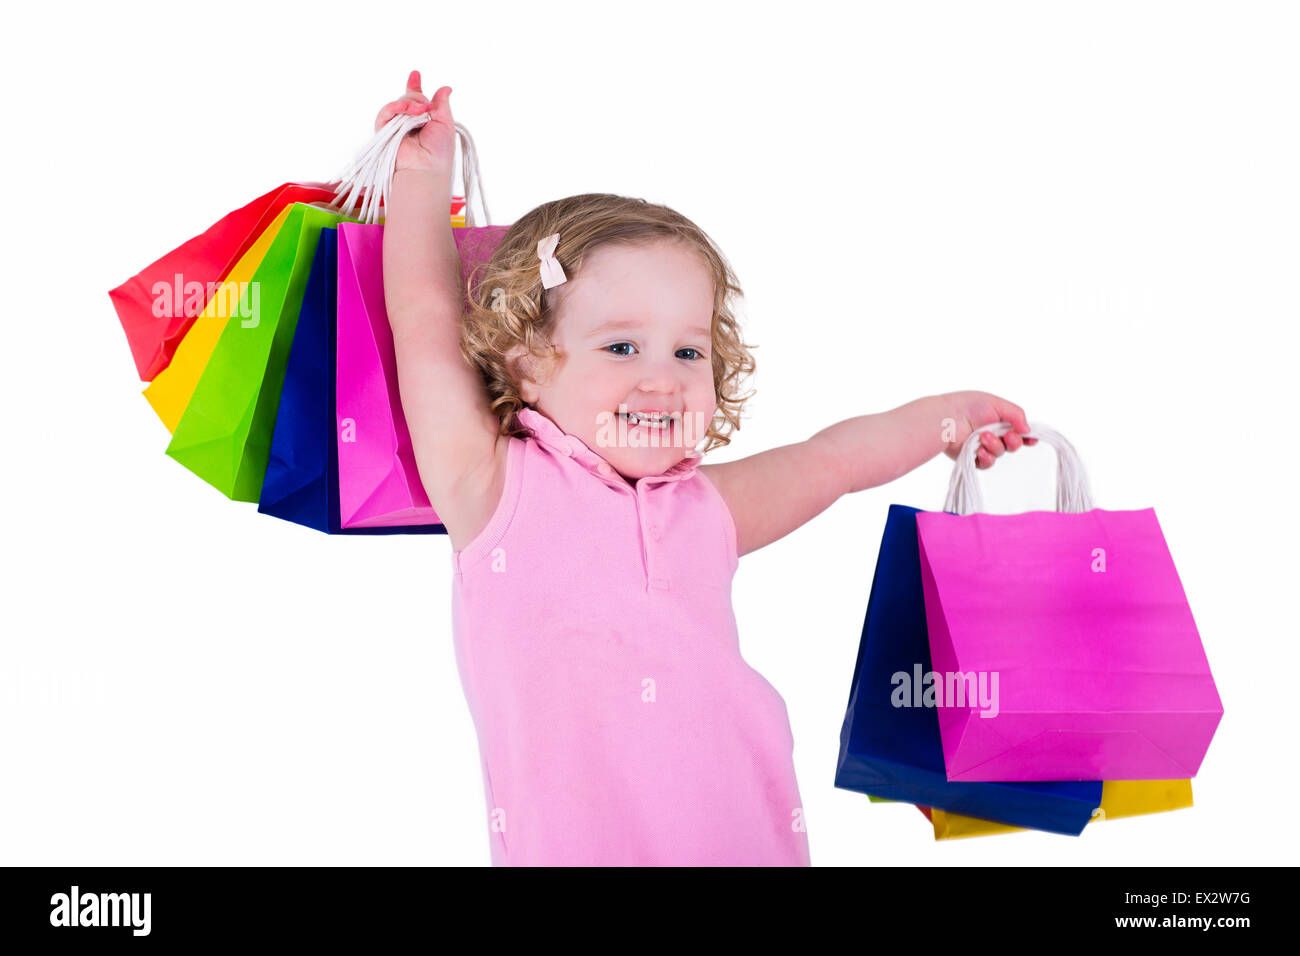 Petite fille dans une robe rose holding colorful shopping bags. Enfant dans  un magasin acheter des vêtements. Vente dans un magasin. Les enfants avec l' achat Photo Stock - Alamy